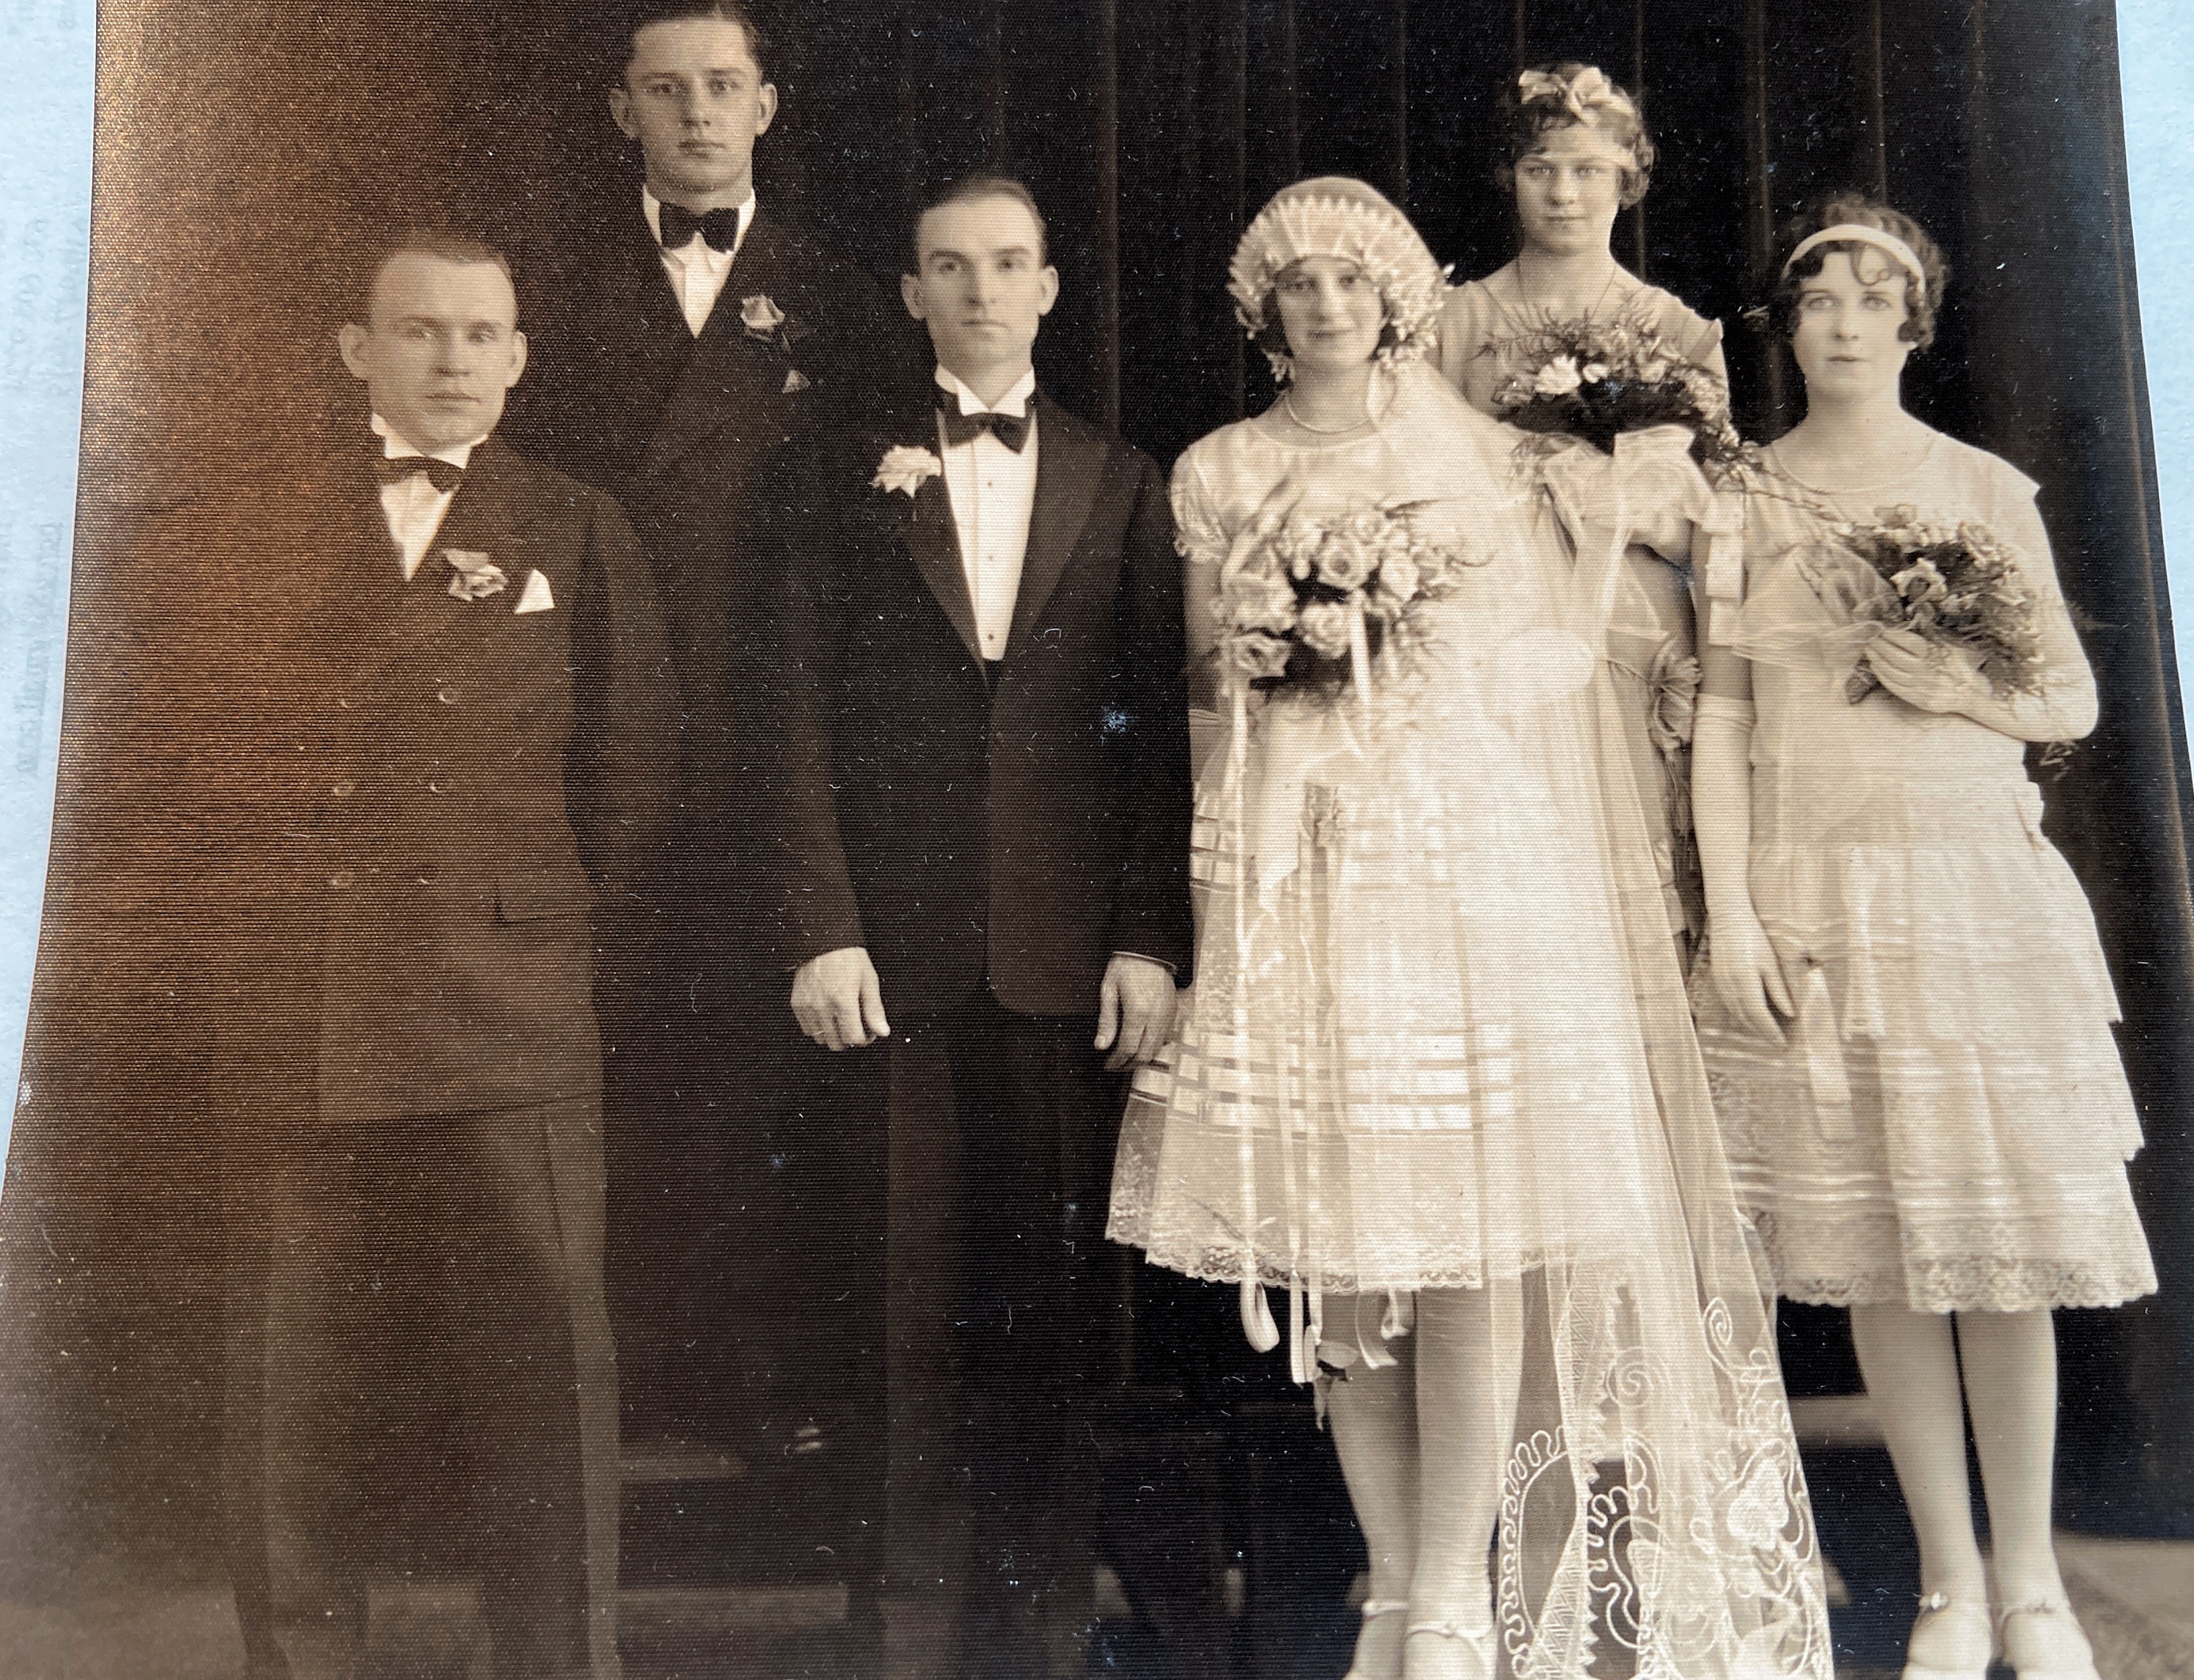 Emanuel Wozniak and Angela Satka June 18 1927 Bridesmaid behind bride is Stella Satka Groomsman behind groom is Emil Wozniak